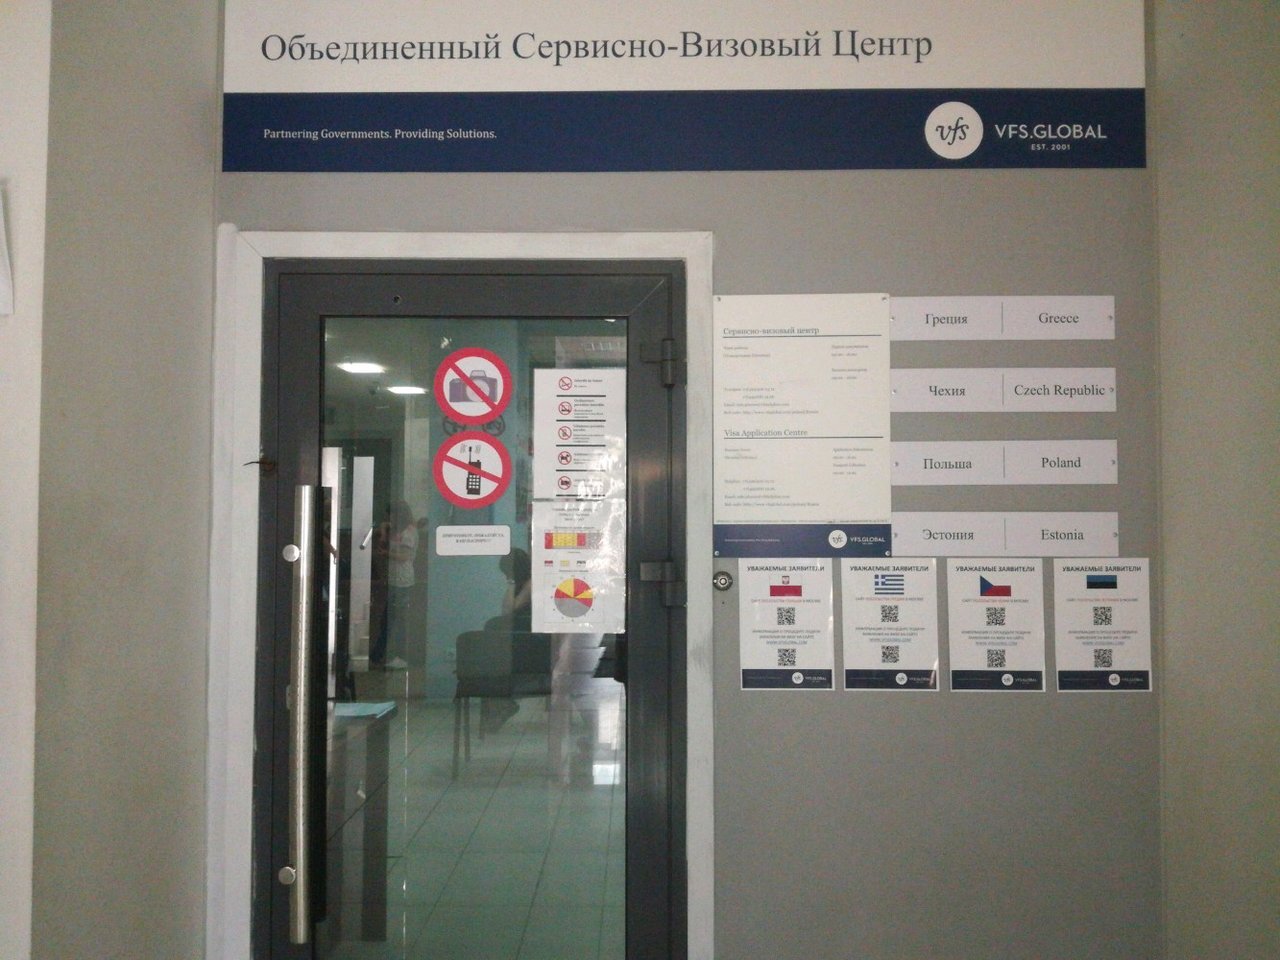 Сервисно-визовый центр Республики Польша в Новосибирске